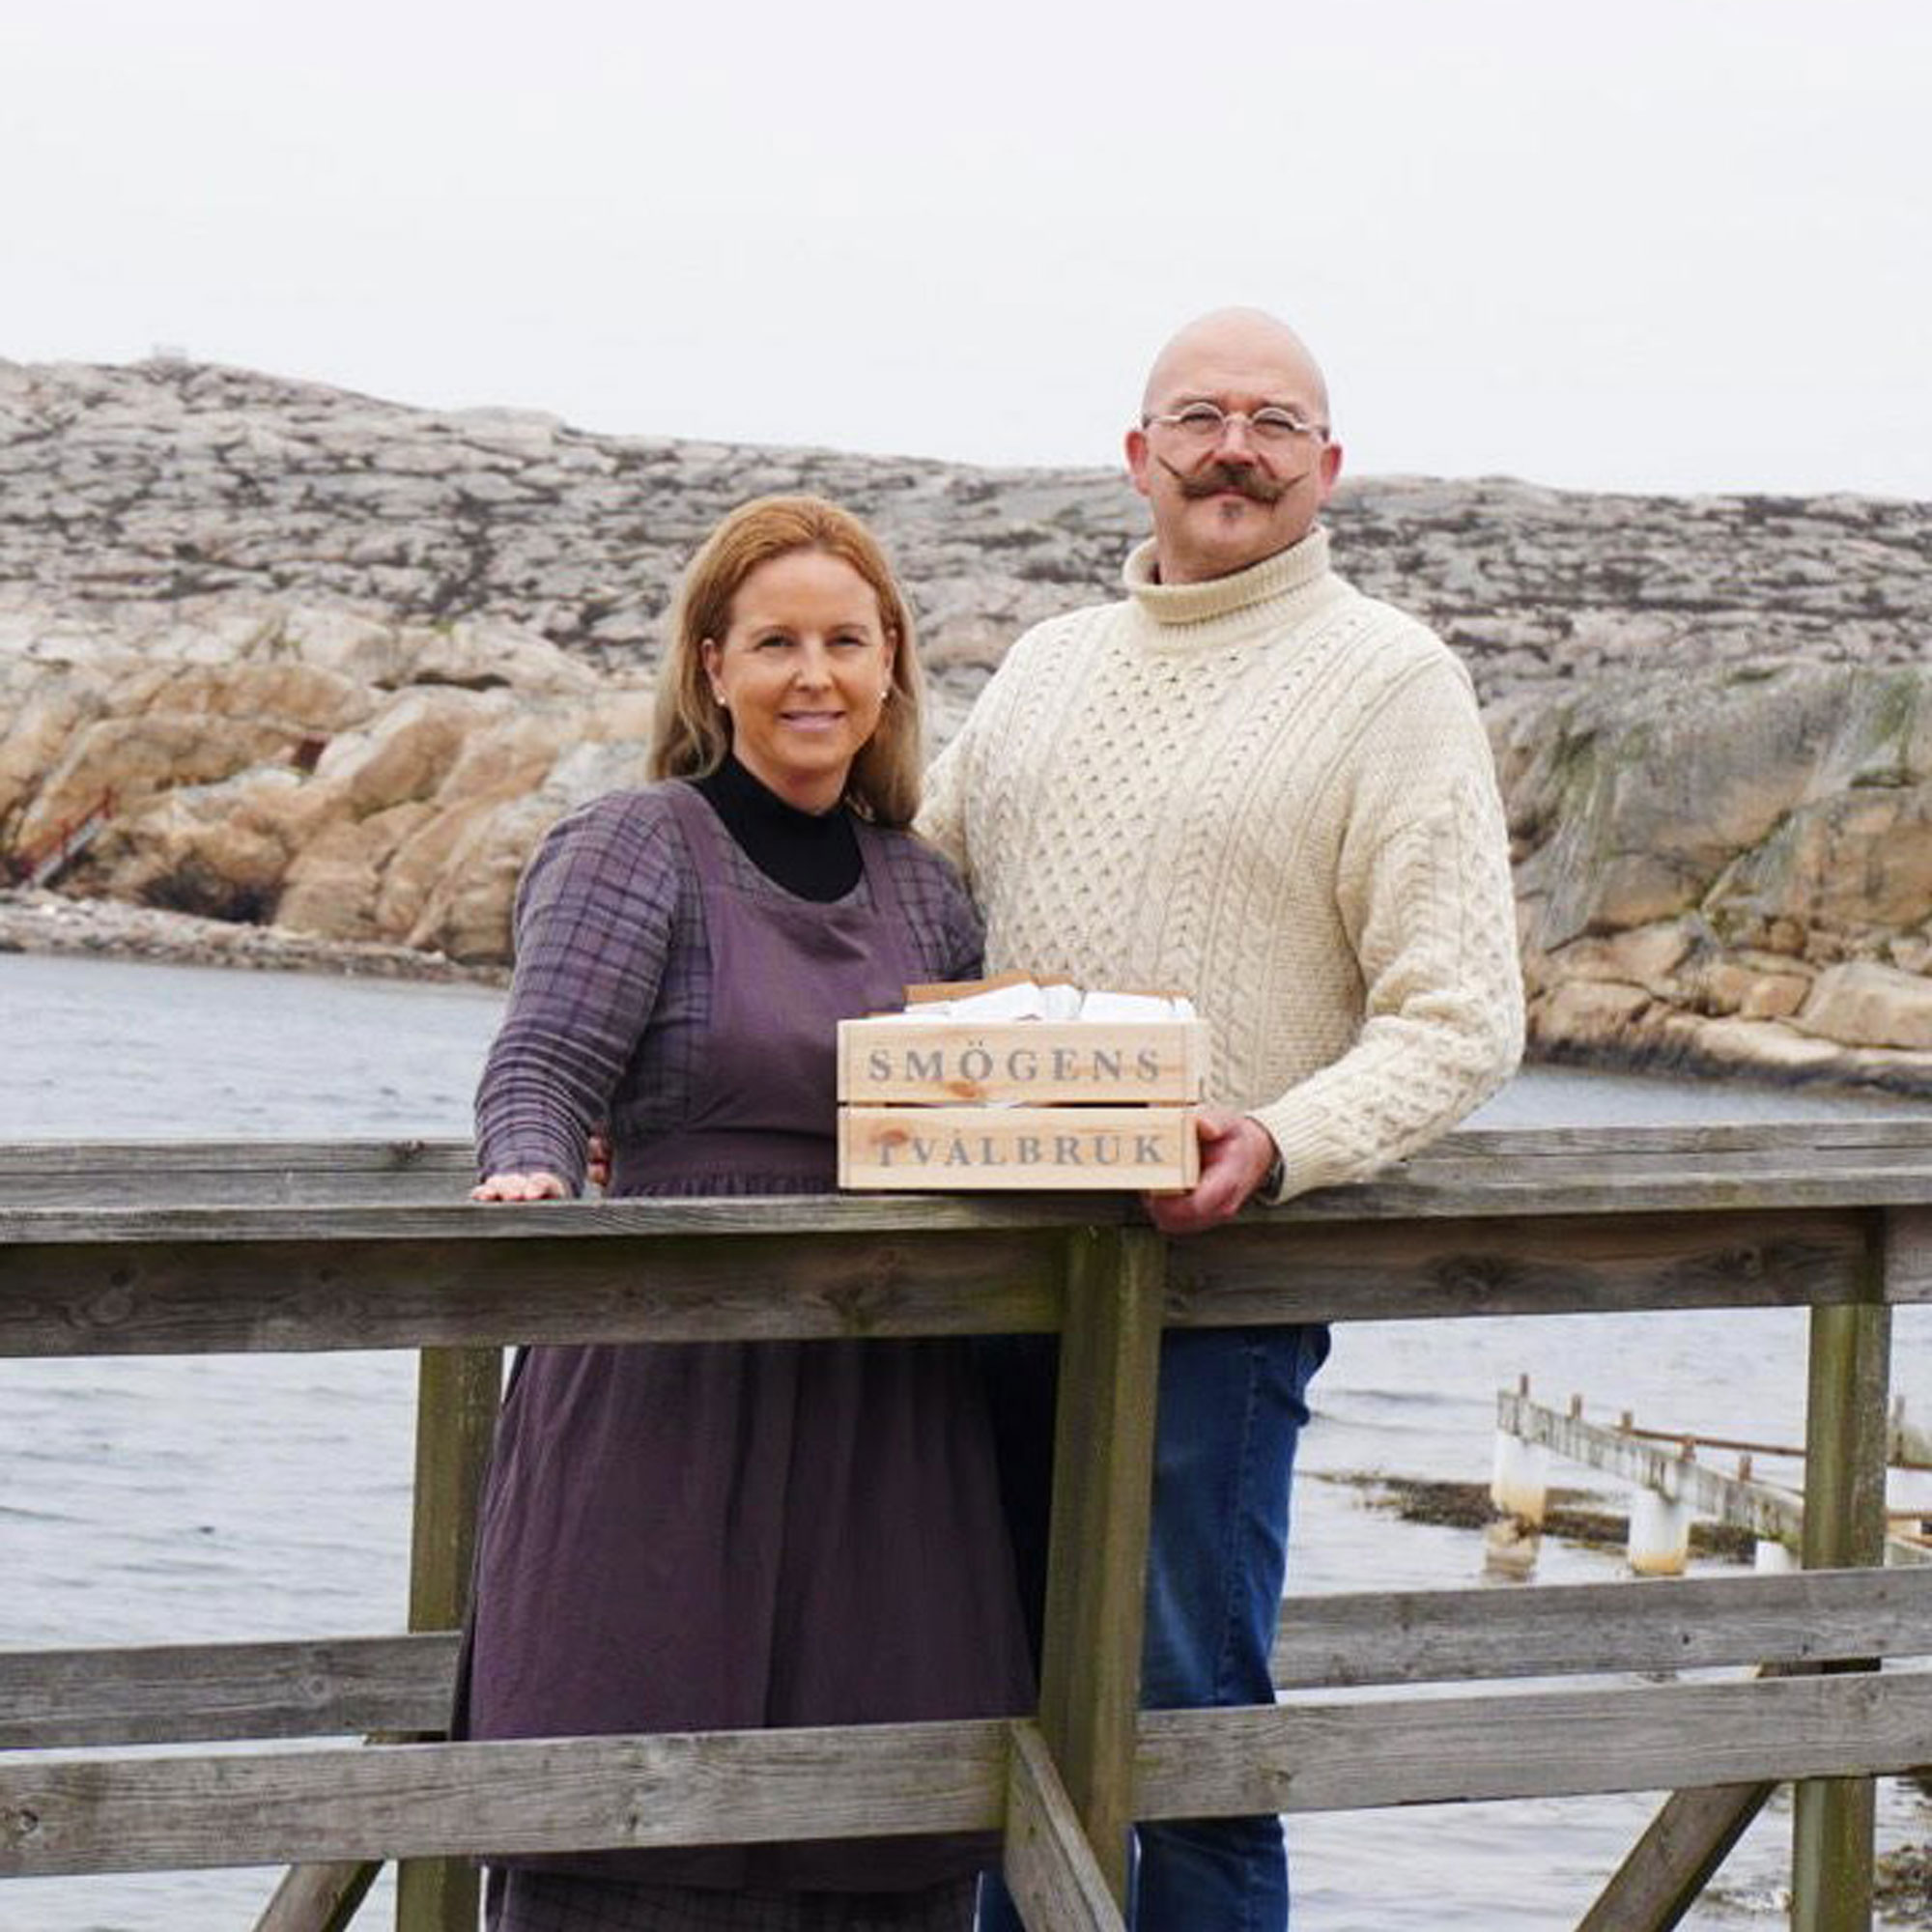 Maria och Carl-Johan från Smögens tvålbruk står på en brygga och visar upp sina tvålar